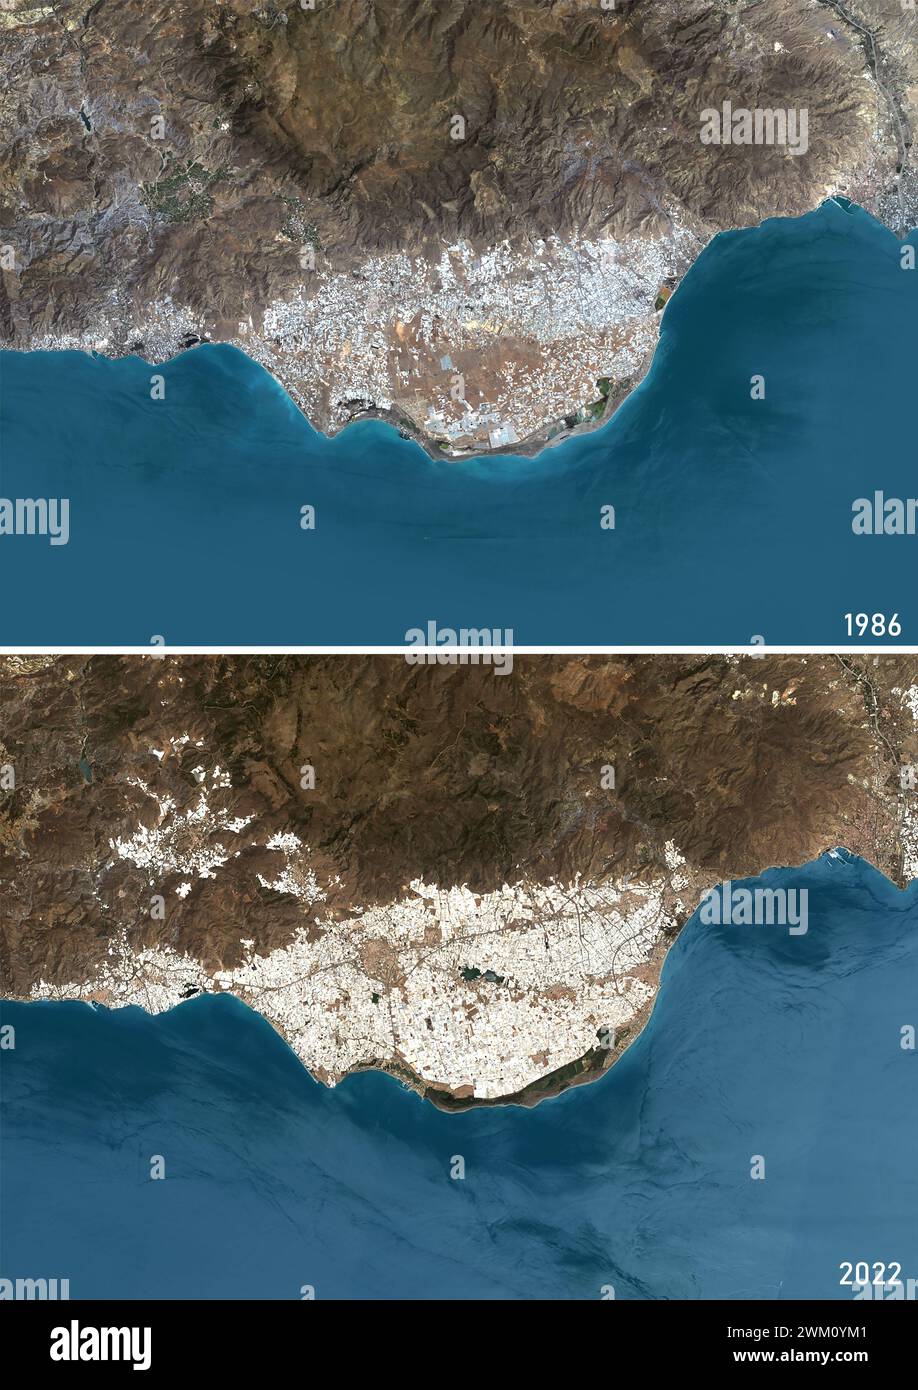 Farb-Satellitenbild der Intensivlandwirtschaft in Almeria, Spanien zwischen 1986 und 2022. Die Bilder zeigen, wie sich das von Gewächshäusern gebildete „Plastikmeer“ ausgebreitet hat. Stockfoto